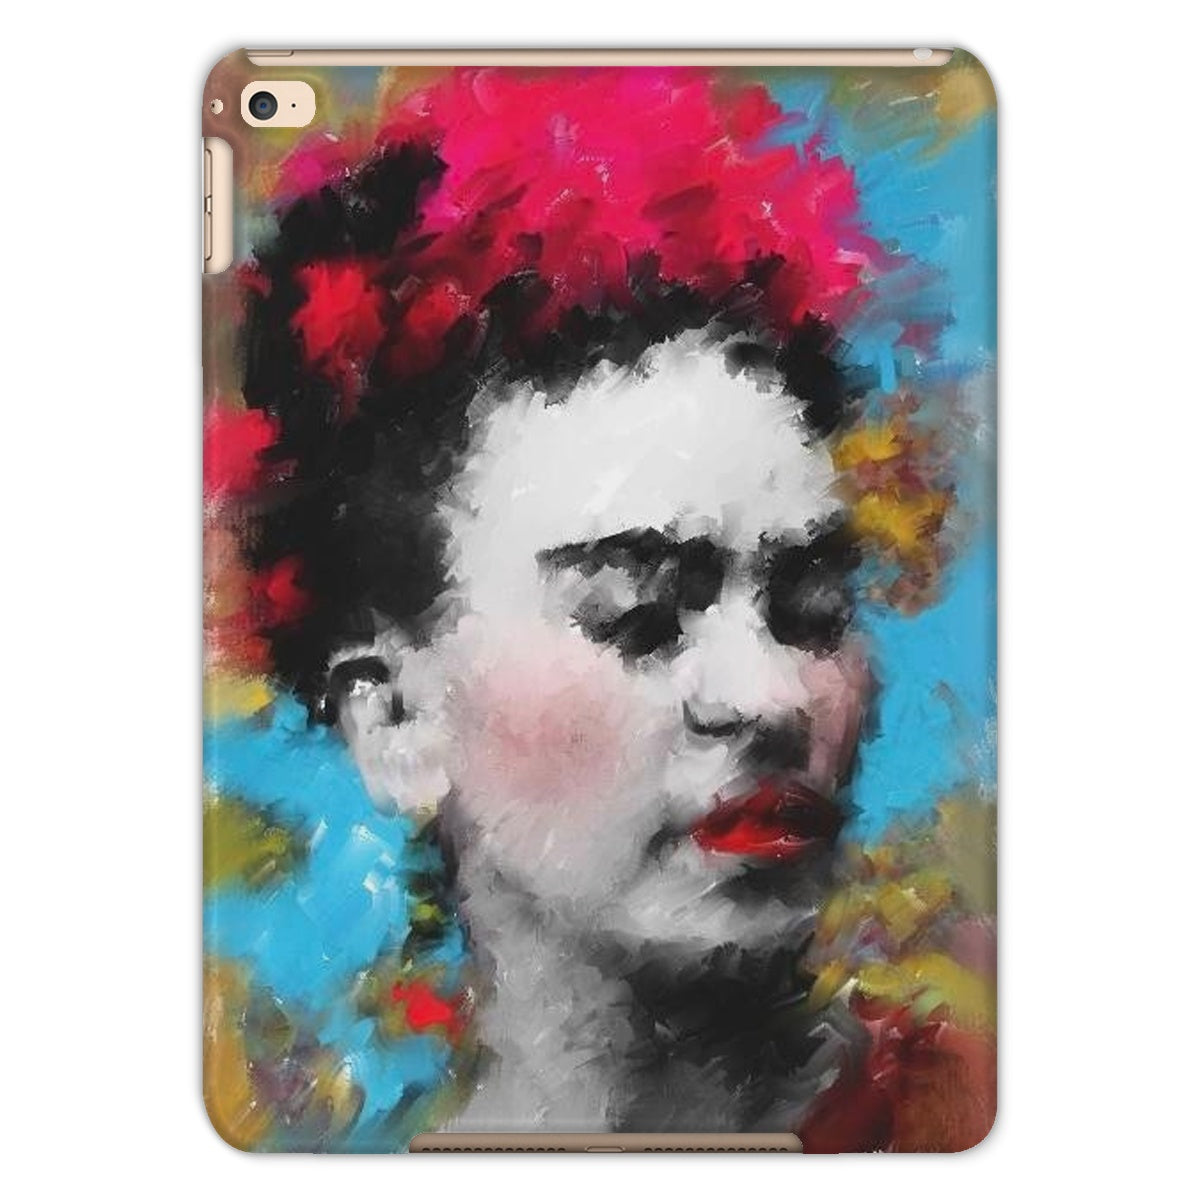 Frida Kahlo - Portrait Tablet Cases